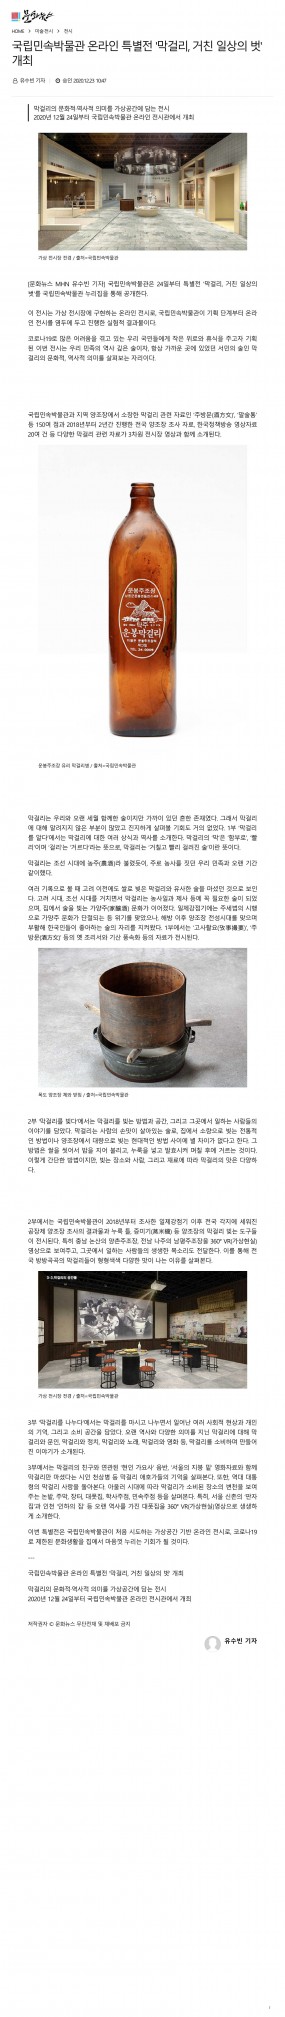 [문화뉴스] 국립민속박물관 온라인 특별전 …